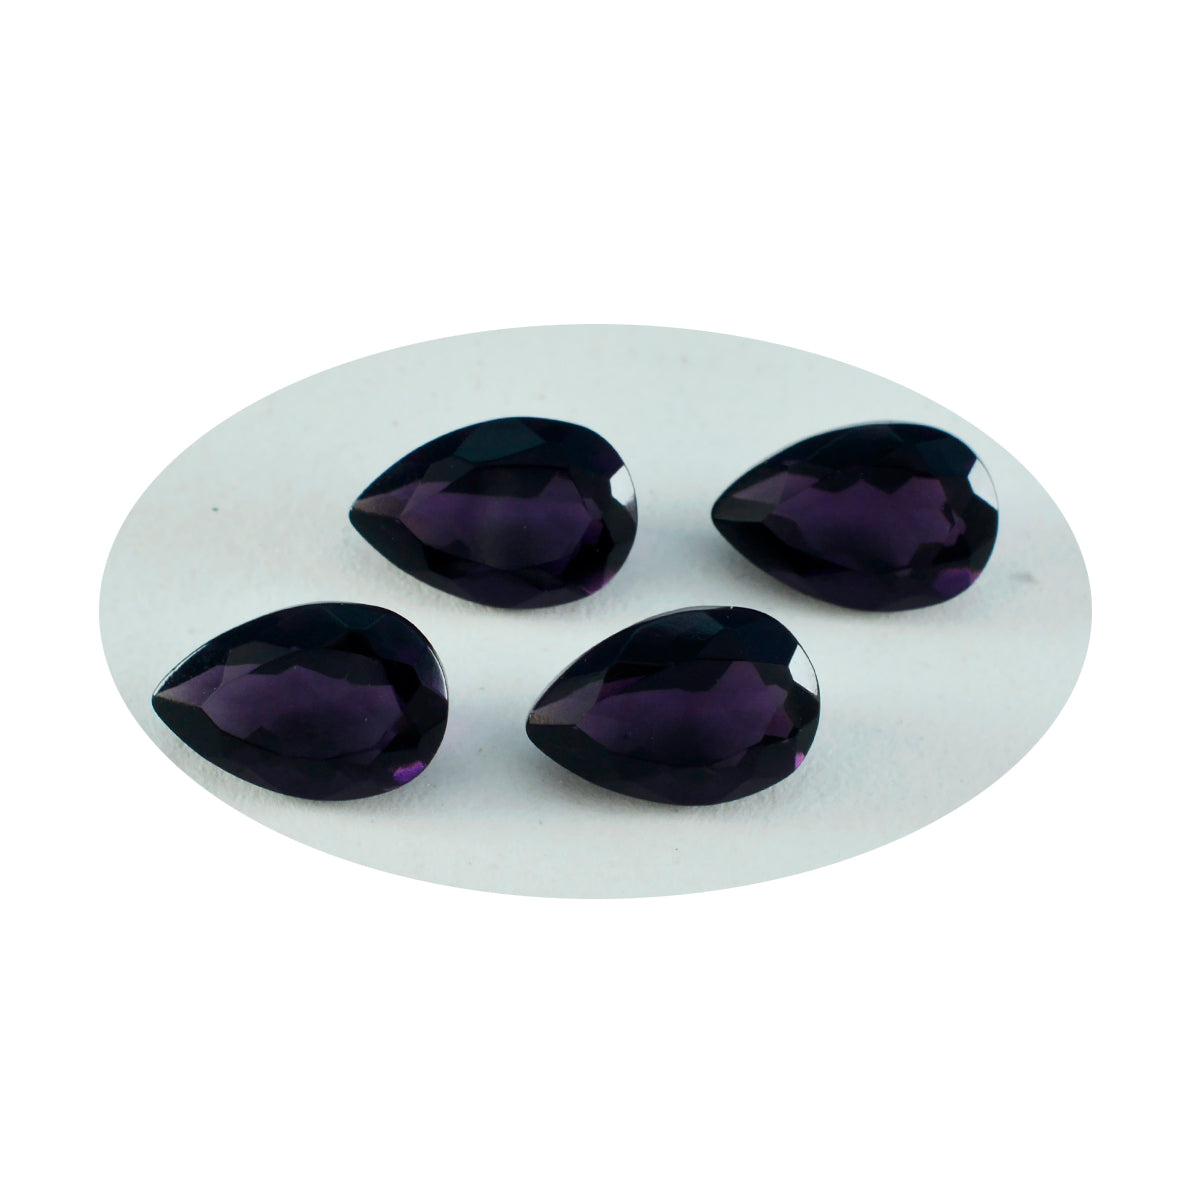 Riyogems 1PC Purple Amethyst CZ Faceted 8x12 mm Pear Shape A+ Quality Loose Gems